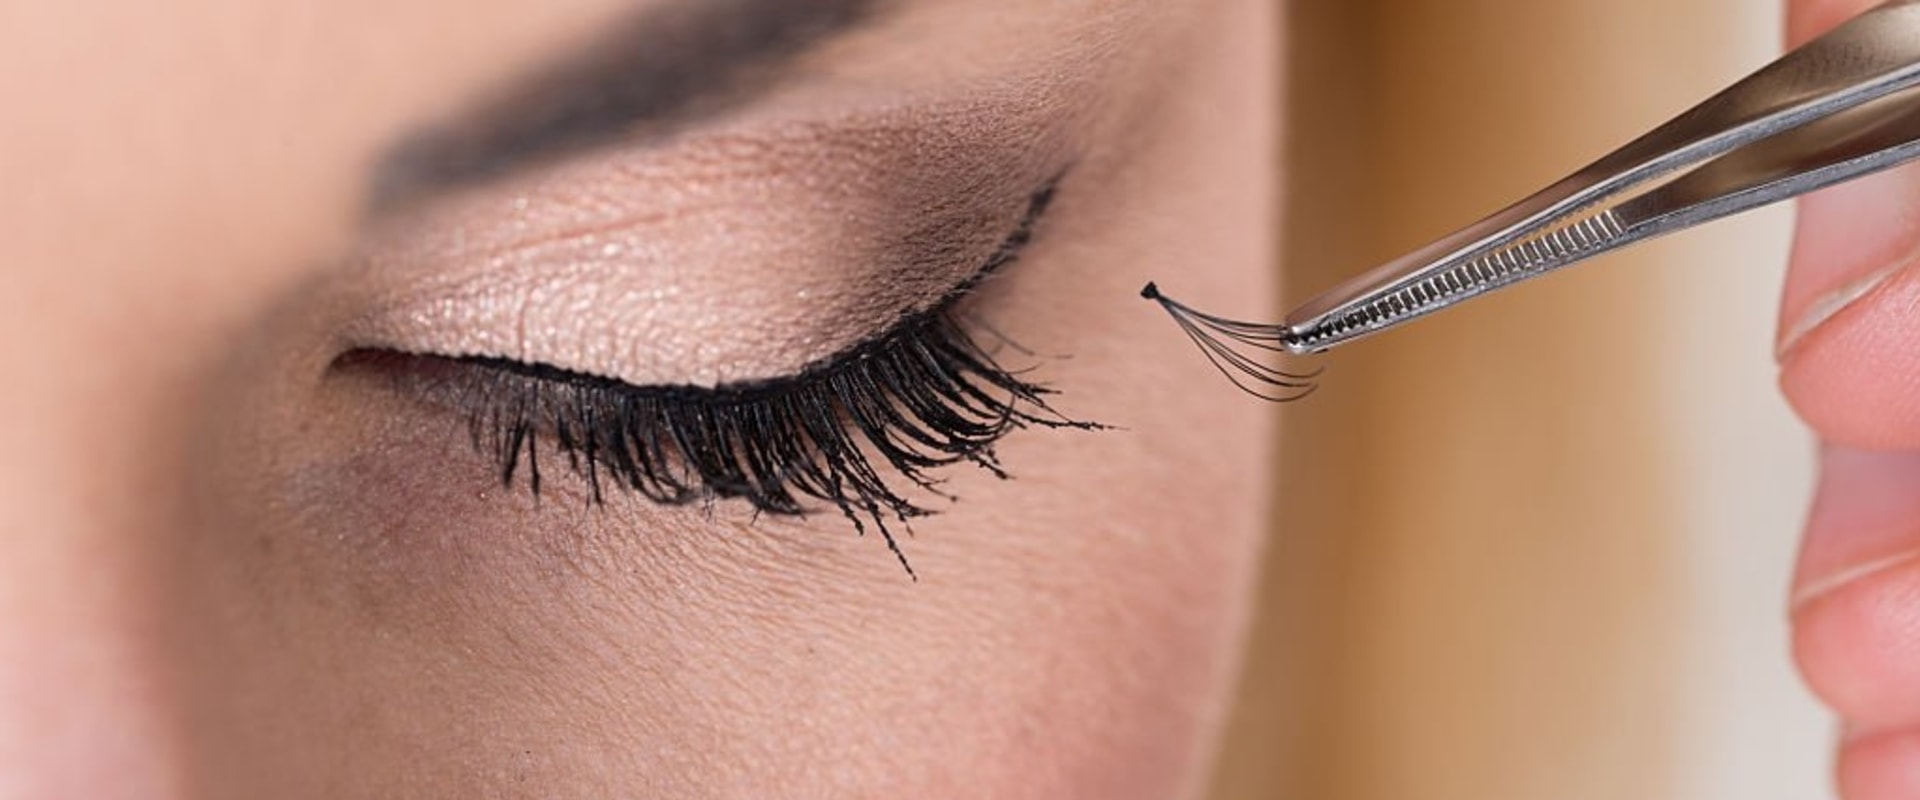 Can you fix damaged eyelashes?